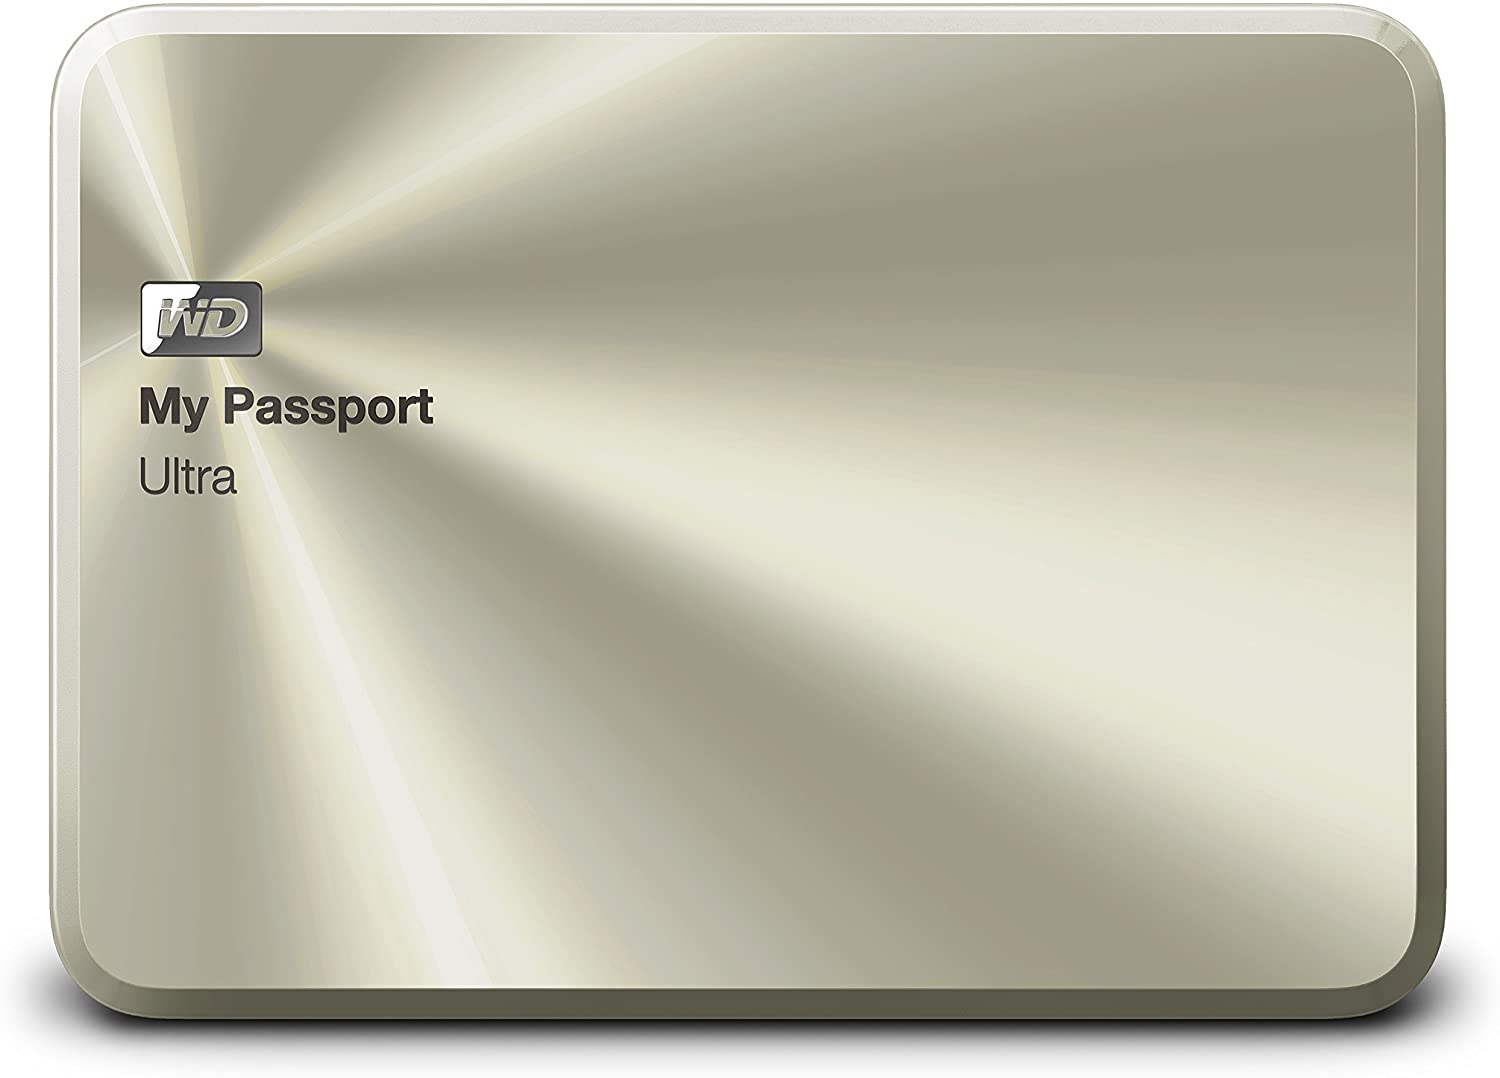 wd passport for mac aluminum